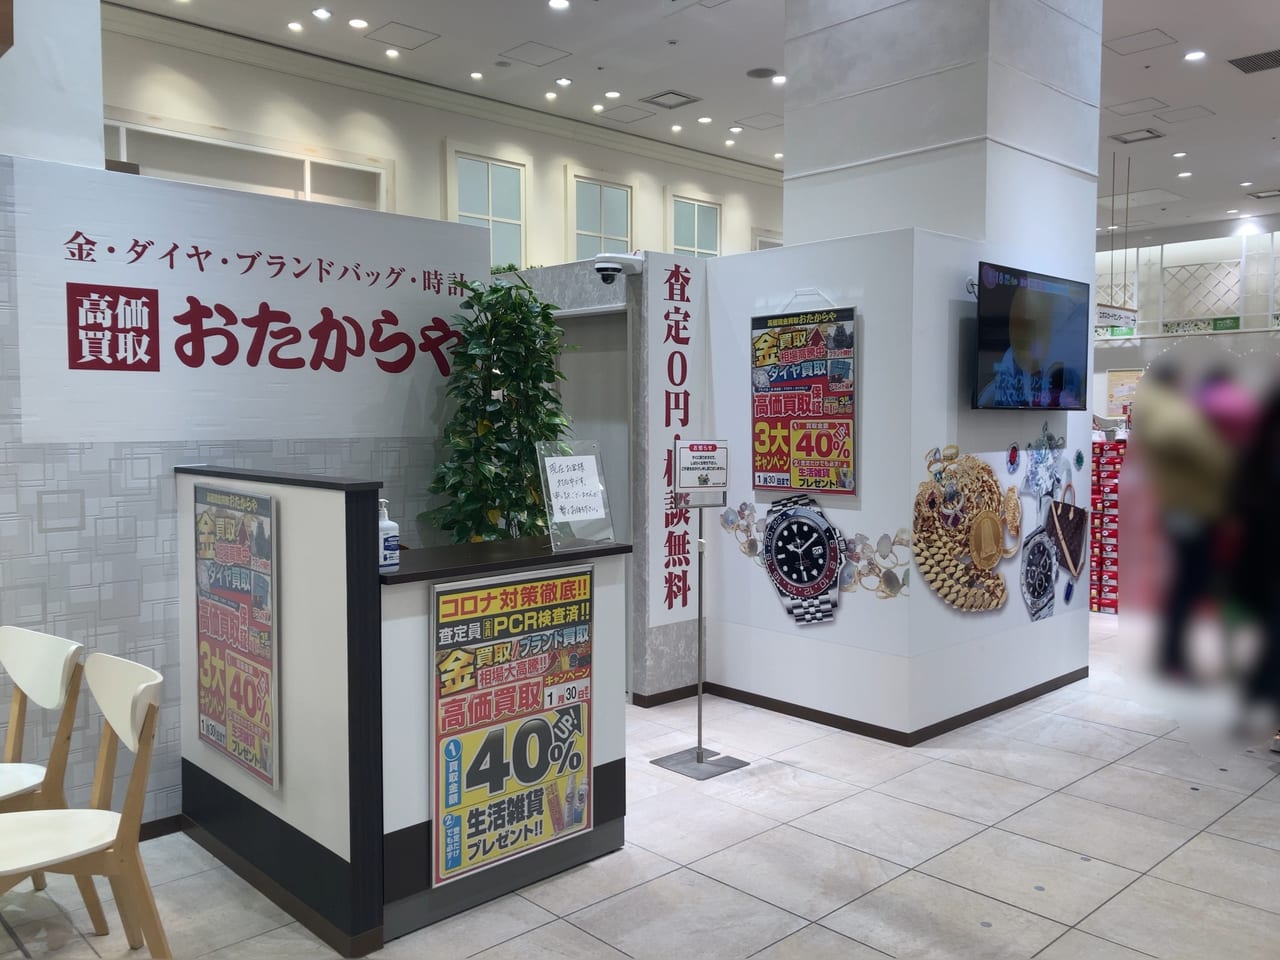 中野区 おたからや中野マルイ店 が21年12月27日にオープンしました 高価買取キャンペーンも開催中 号外net 中野区